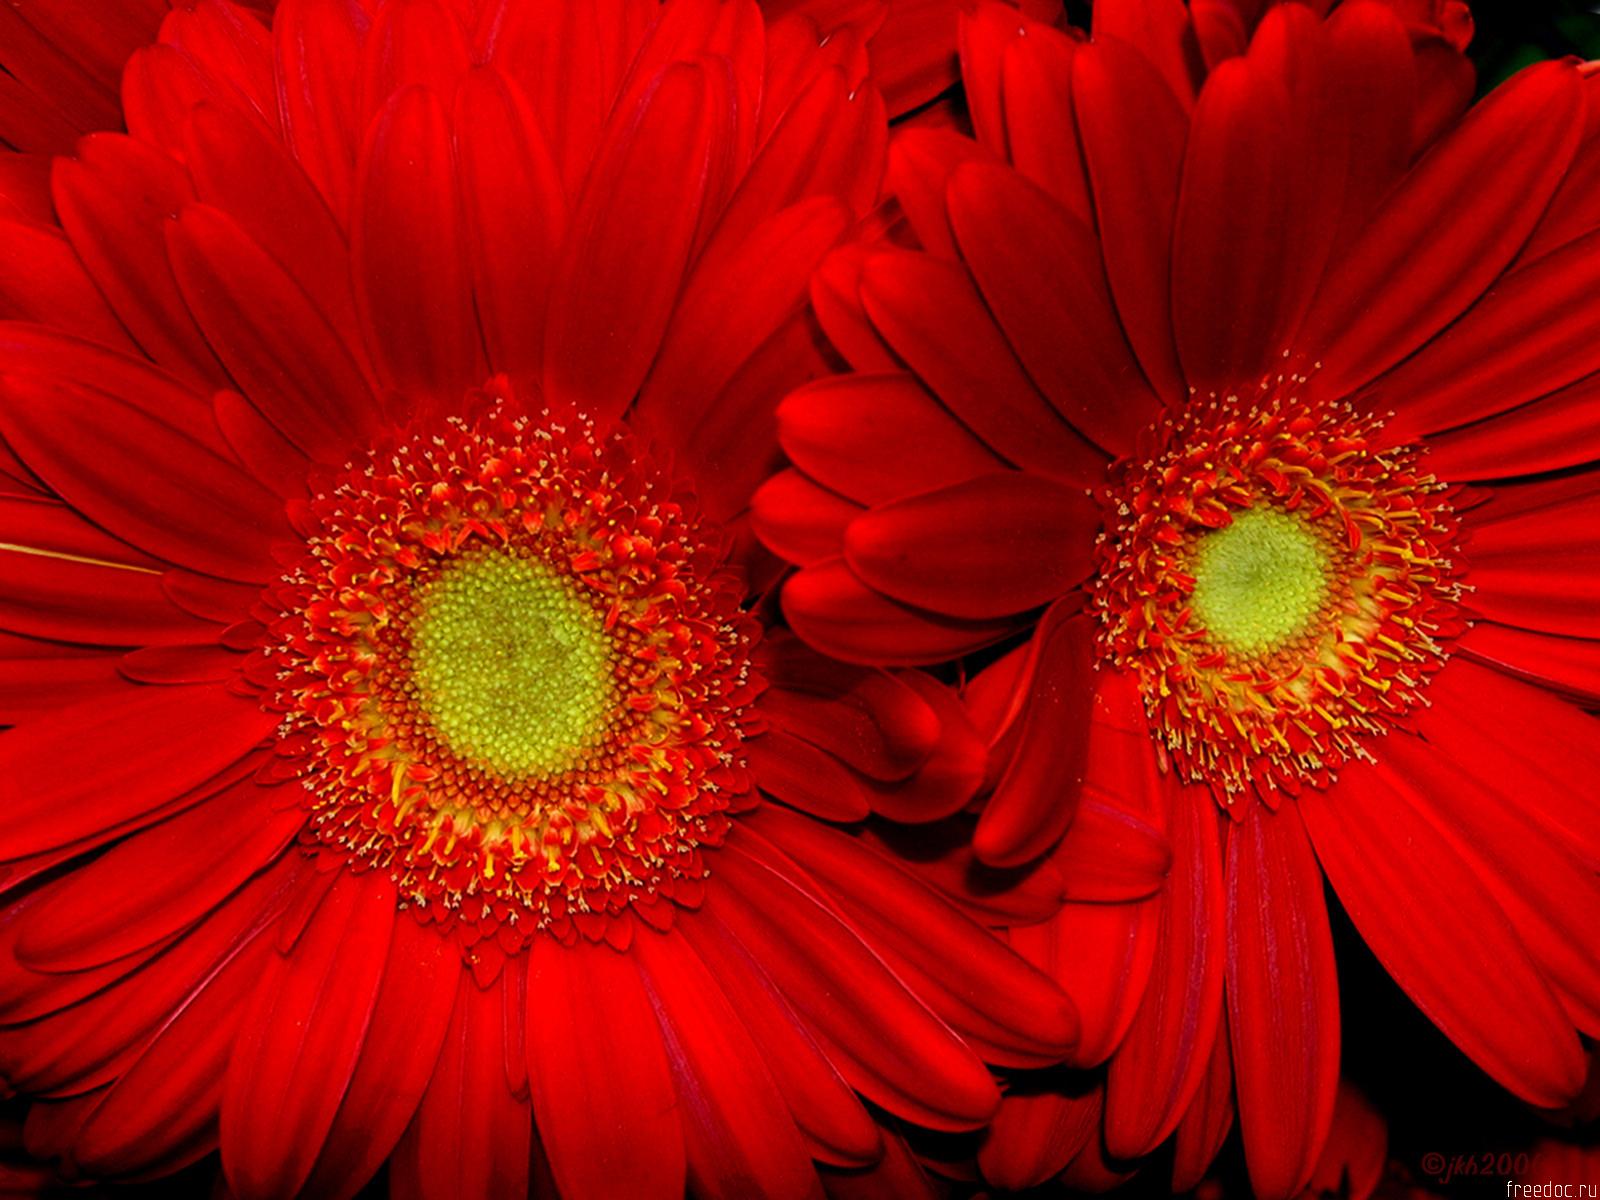 Wallpaper For Desktop Red Sun Flower